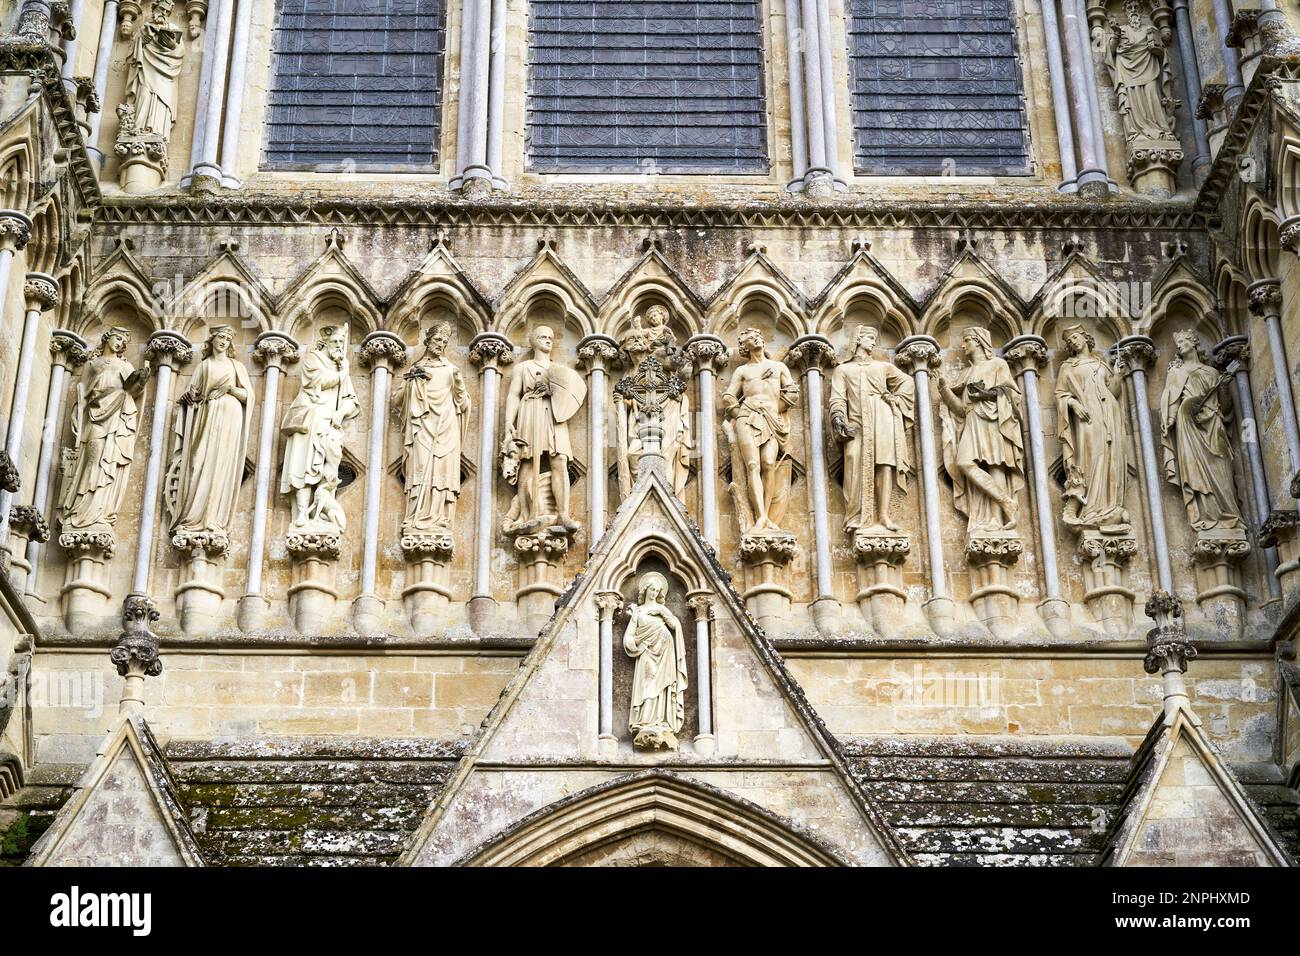 Rangée de statues en pierre sculptée de saints au-dessus de l'entrée principale de la cathédrale de Salisbury Banque D'Images